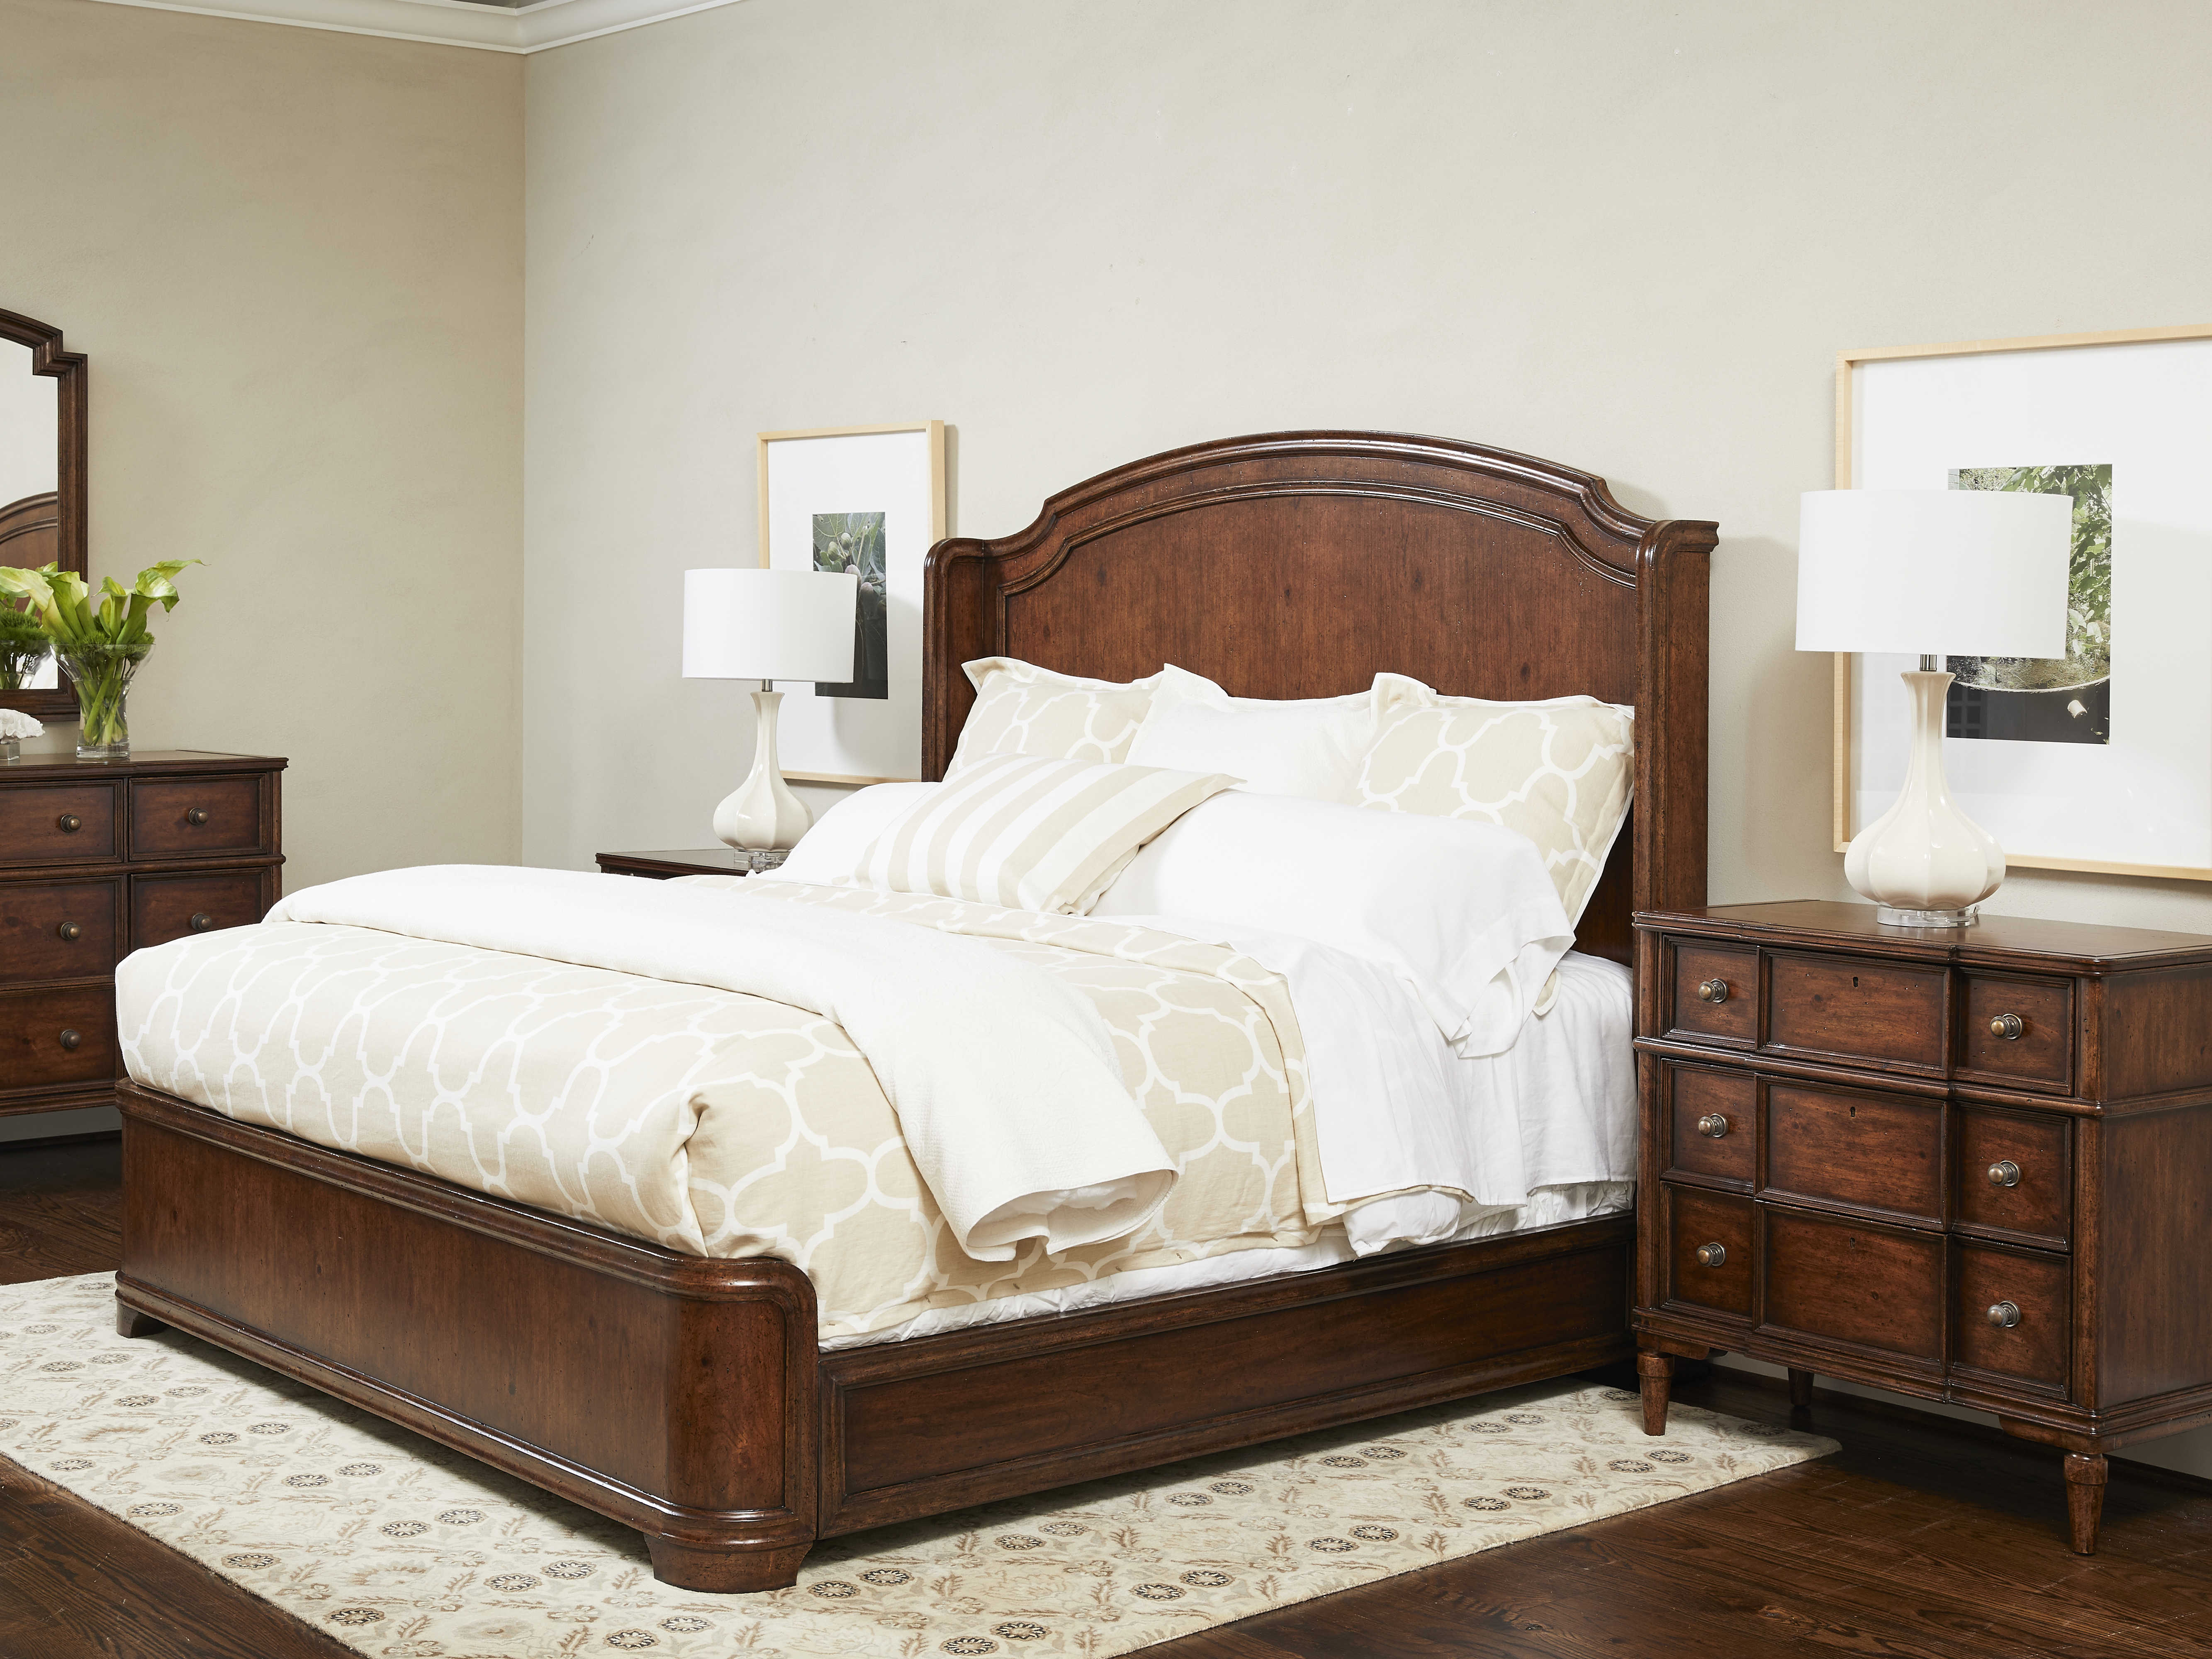 stanley furniture king bedroom set